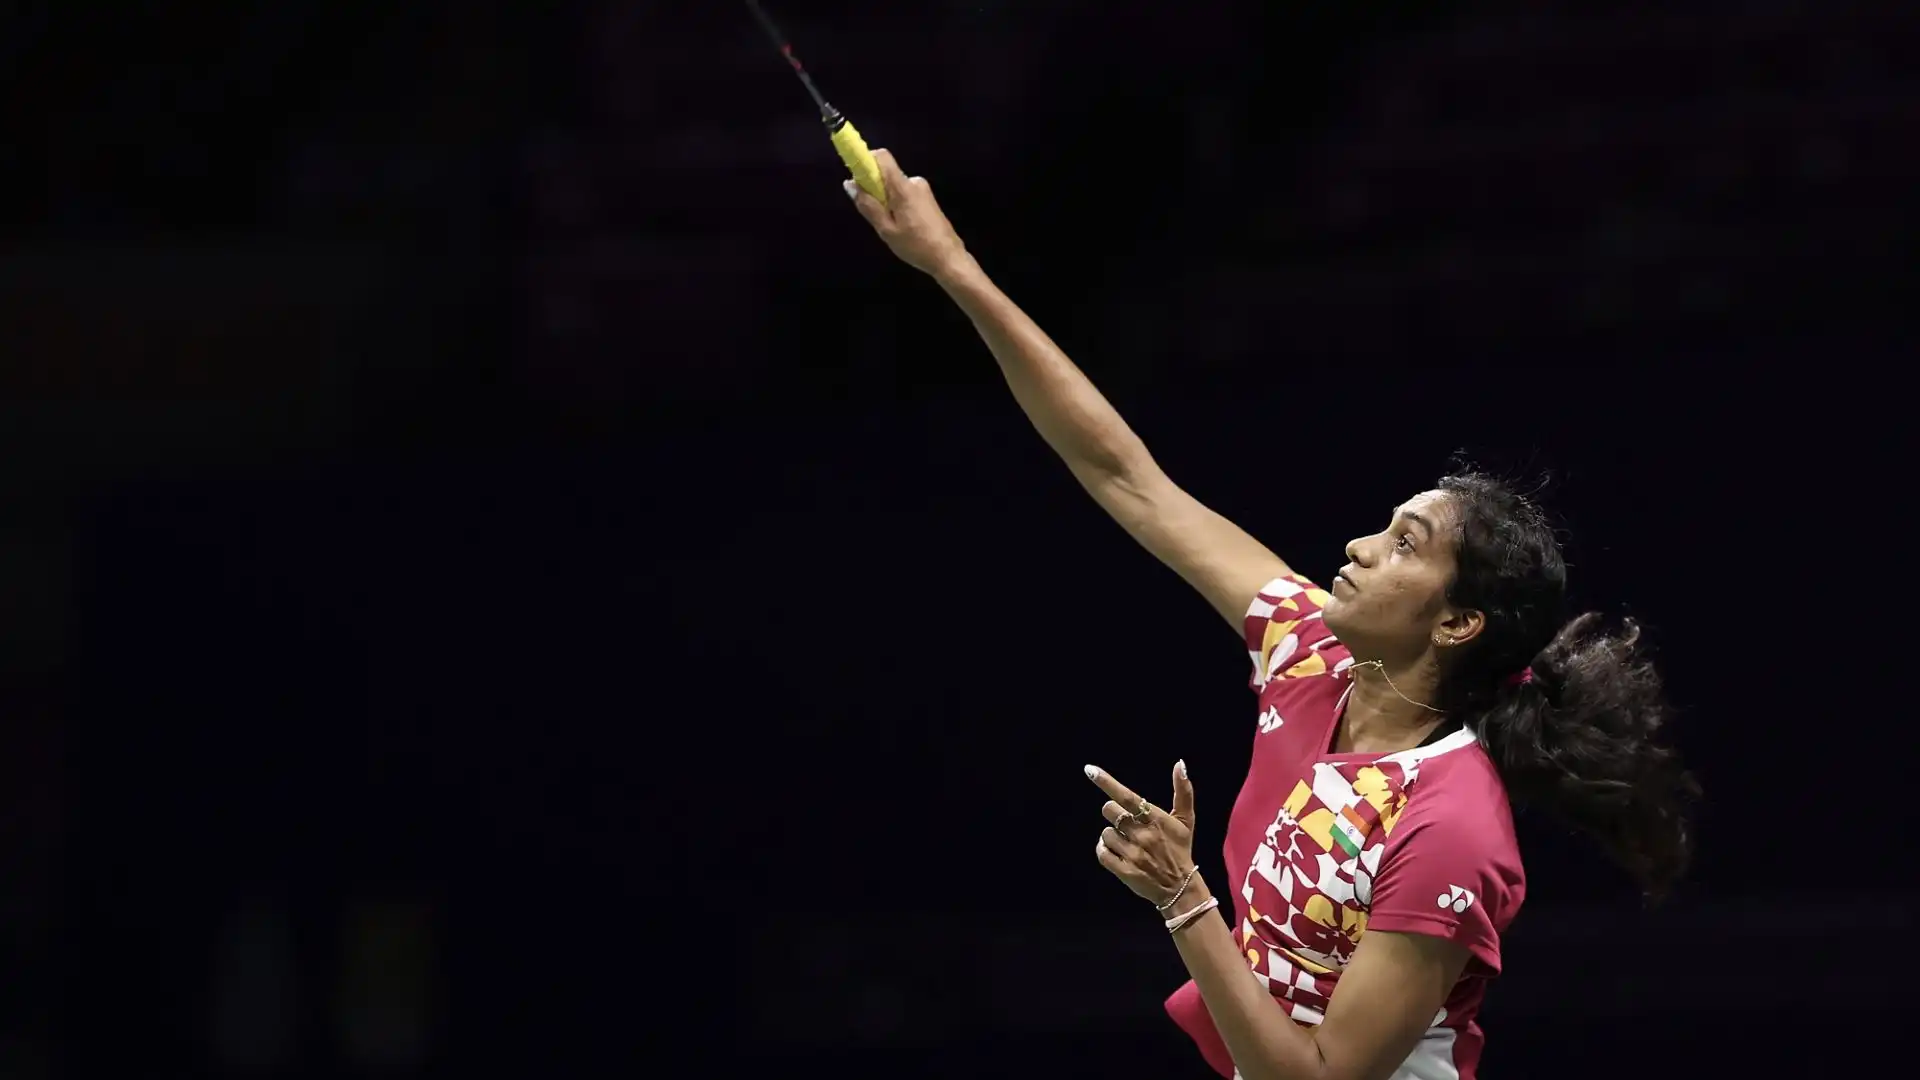 Nata il 5 luglio 1995 a Hyderabad, è diventata la prima atleta indiana nella storia del badminton olimpico a raggiungere una finale per l'oro a Rio 2016